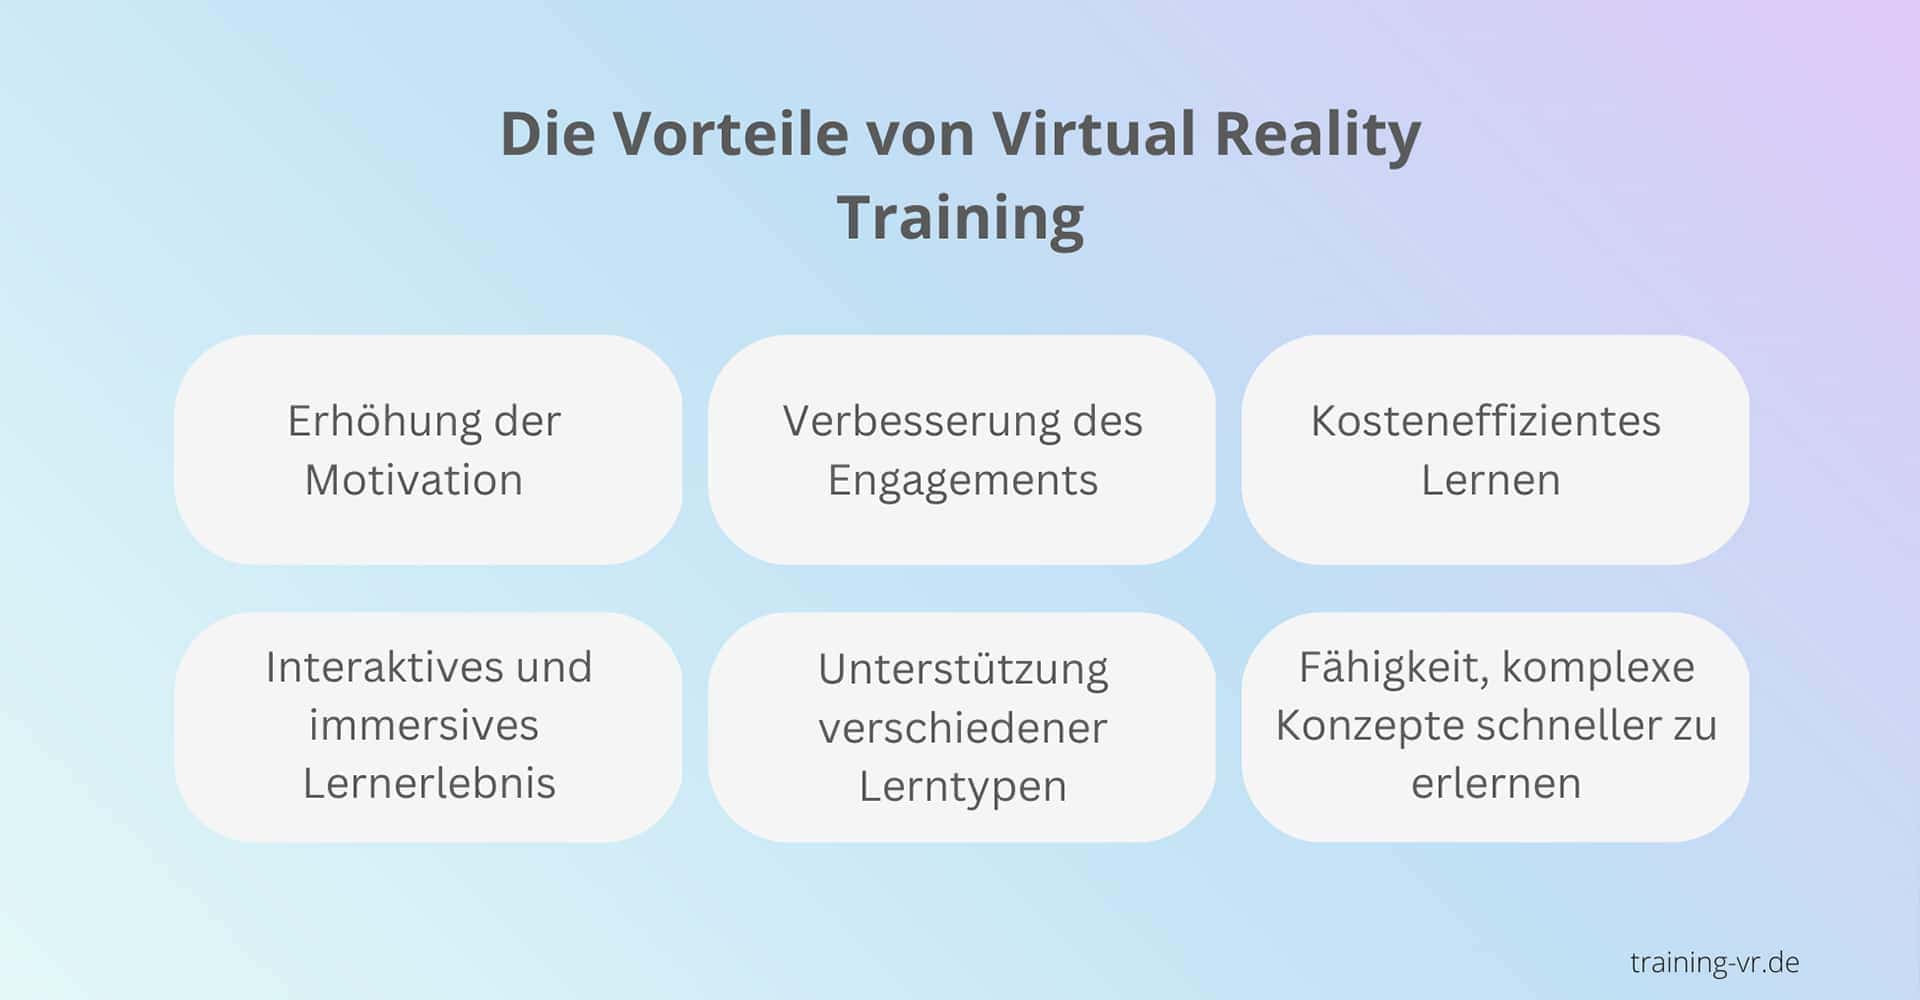 Die Vorteile von Virtual Reality Training